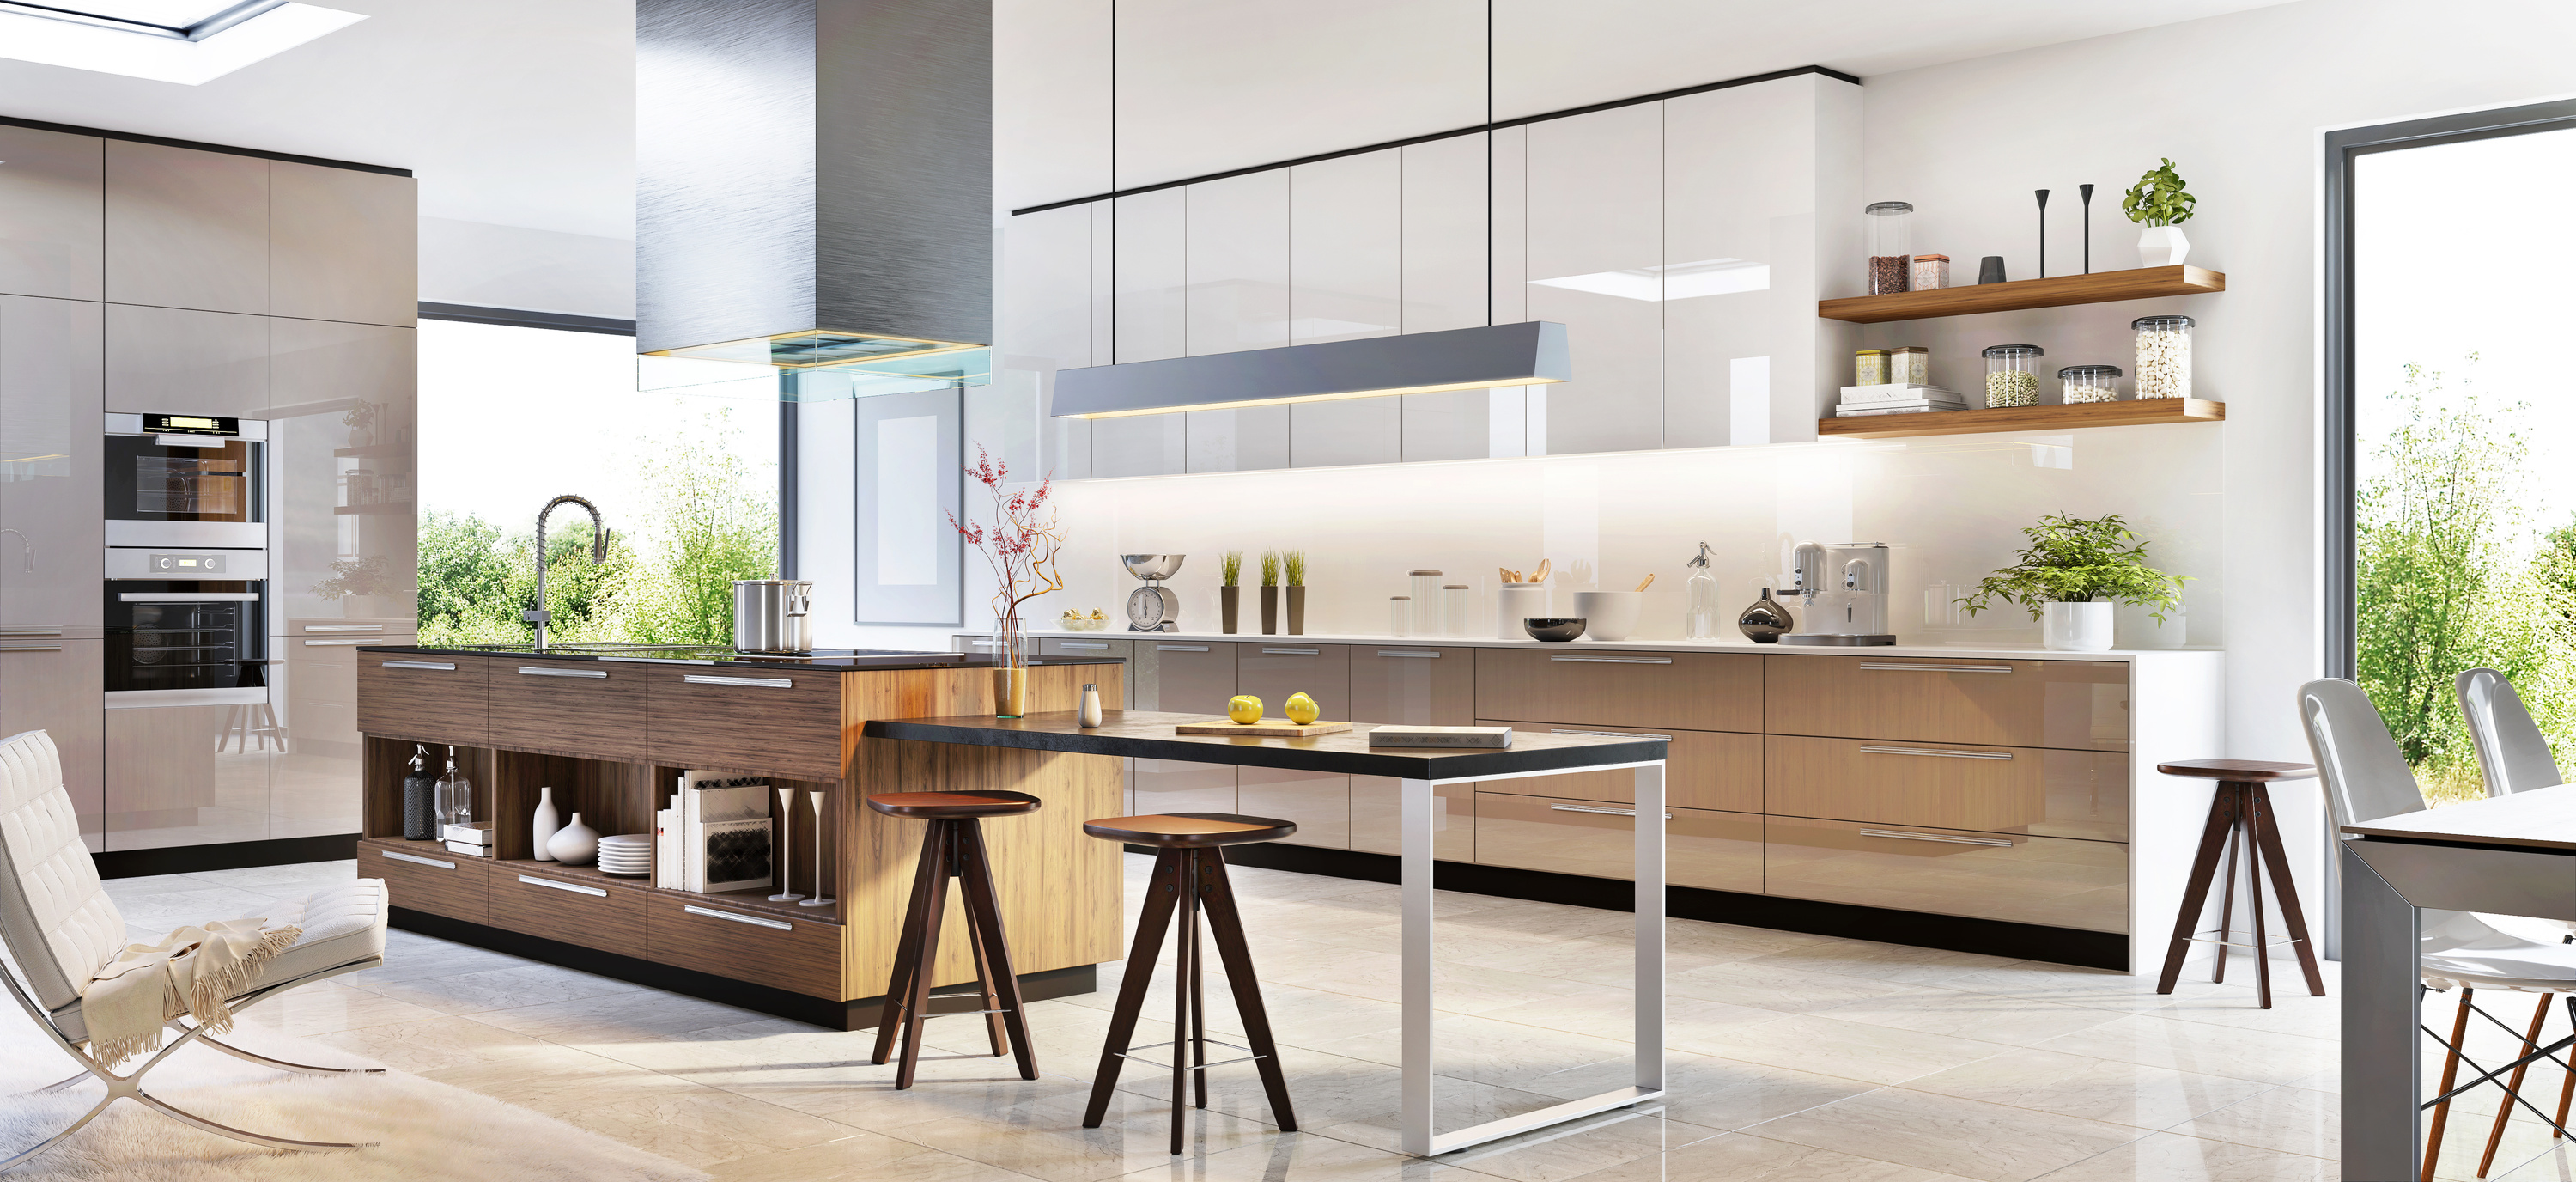 Modern kitchen interior design in a luxury house